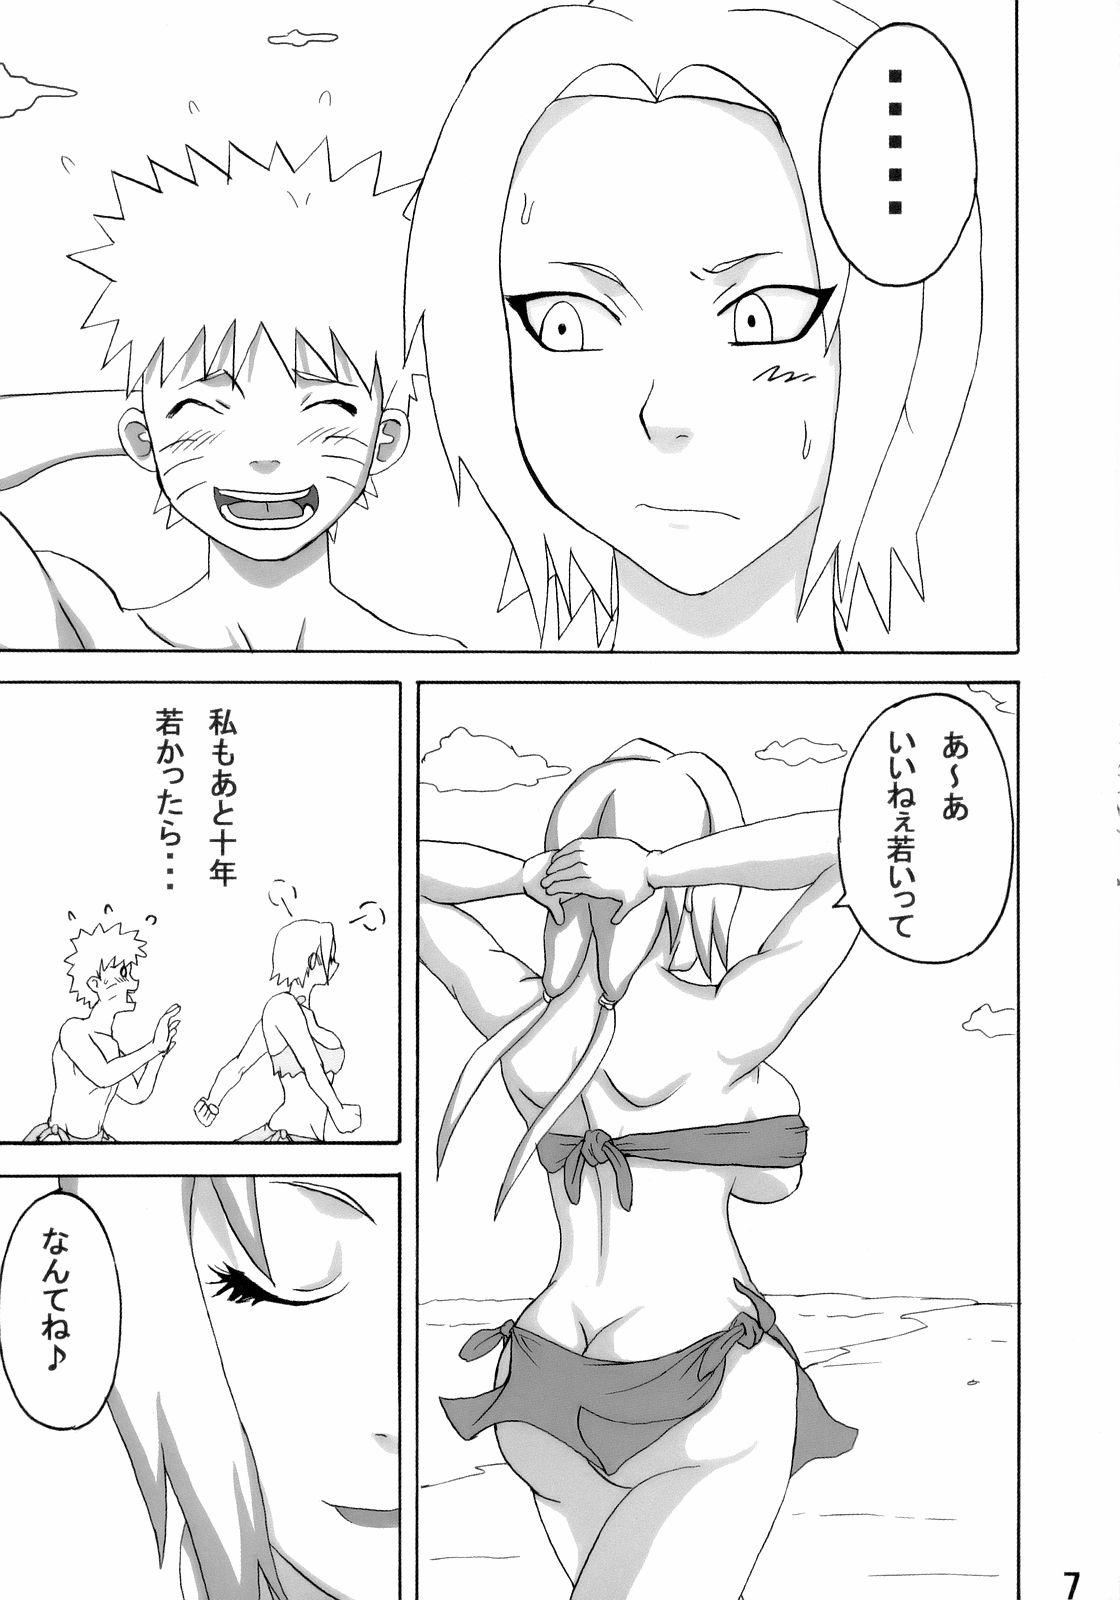 Gordibuena Jungle de Ikou! - Naruto Uniform - Page 8